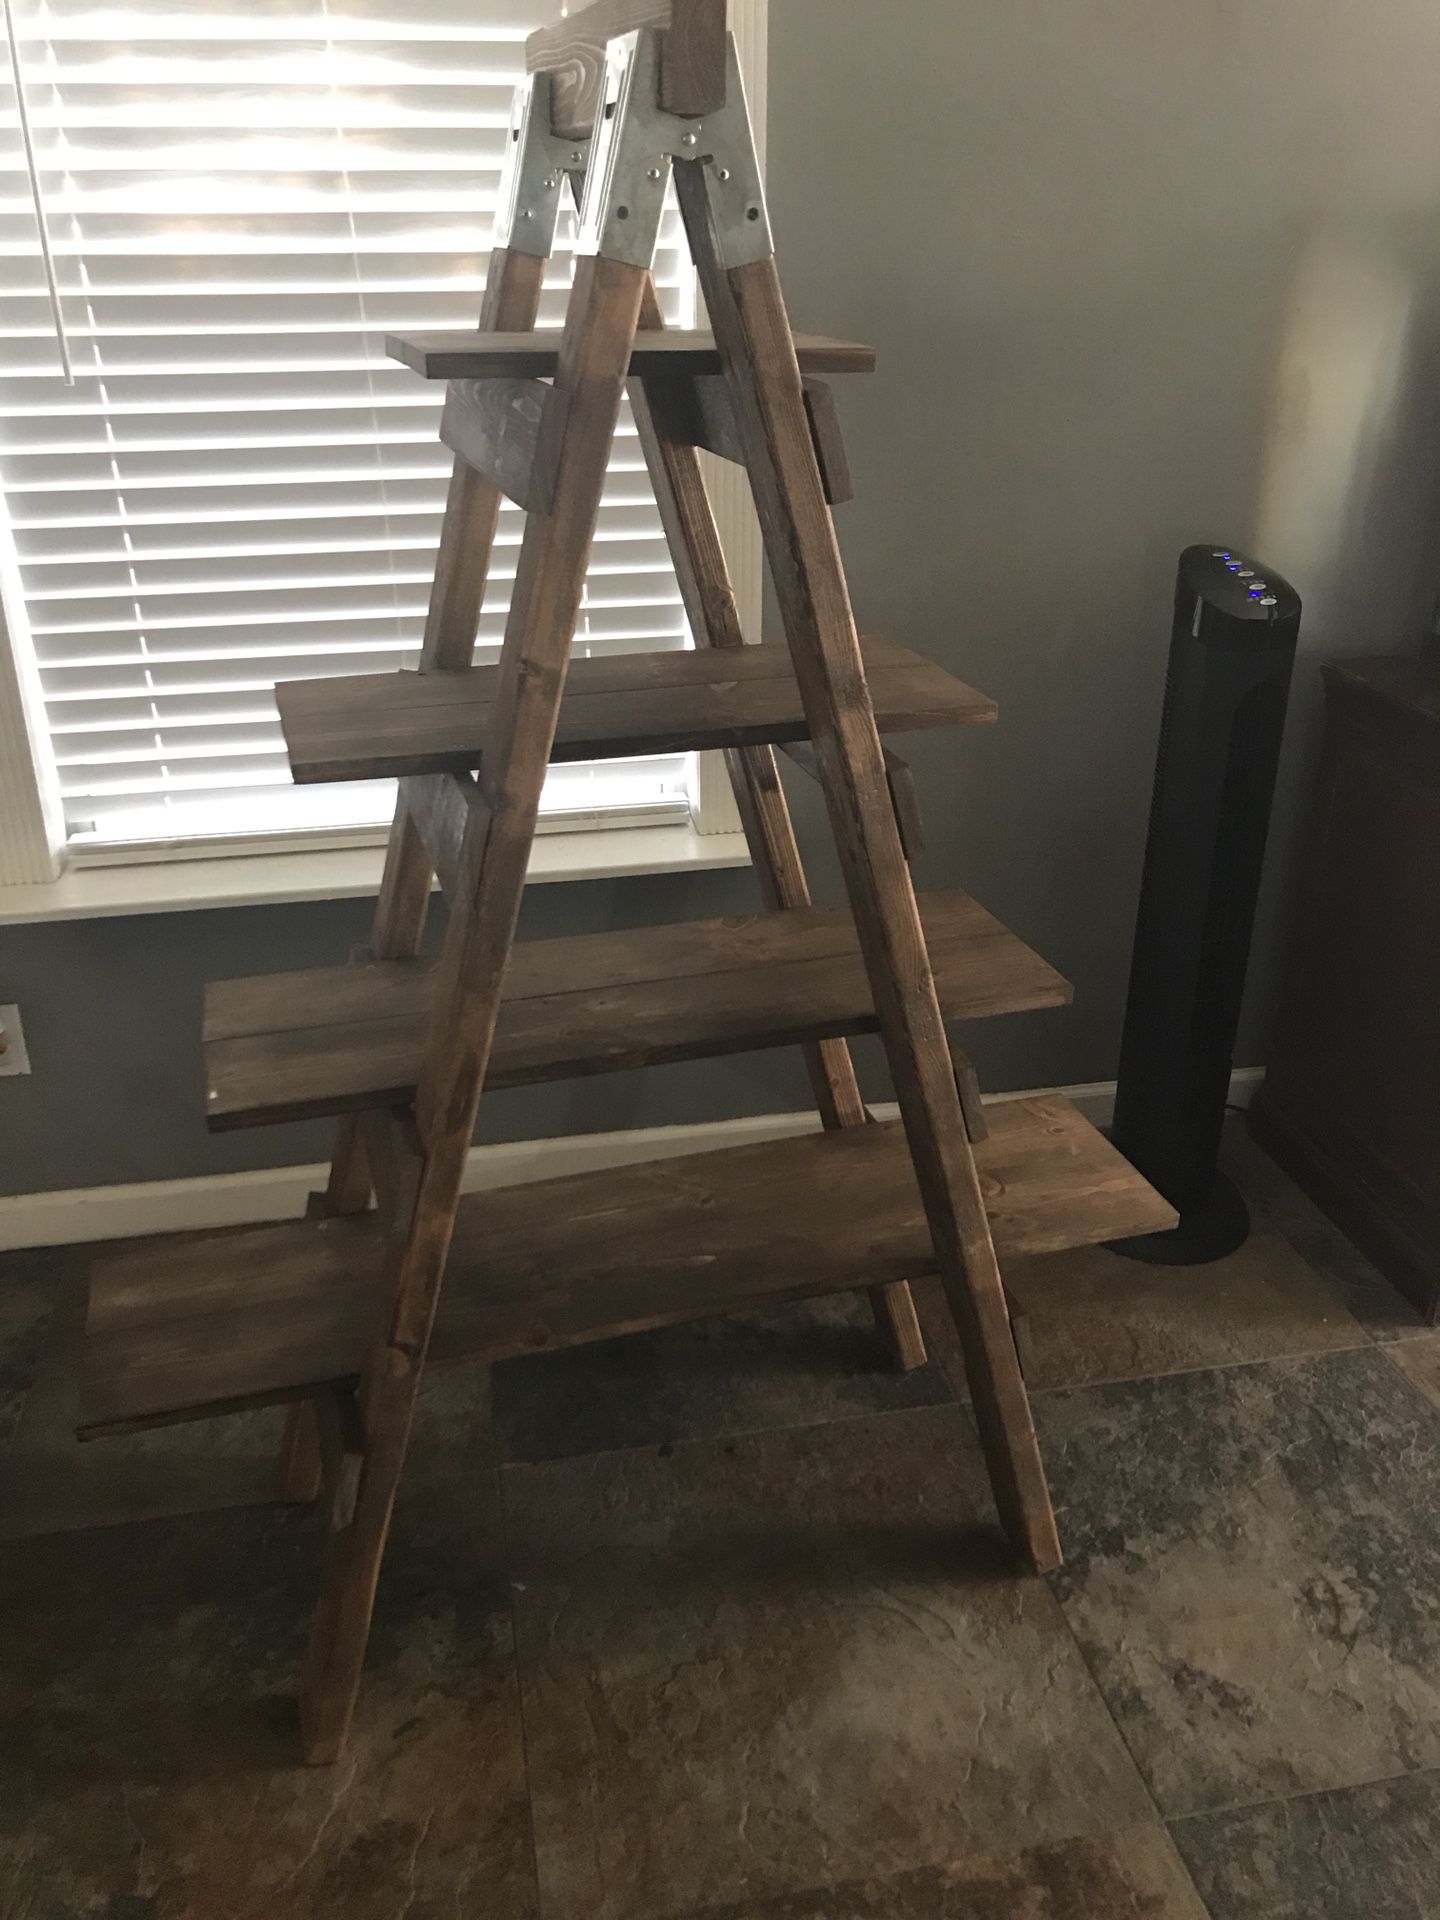 Farmhouse ladder shelf